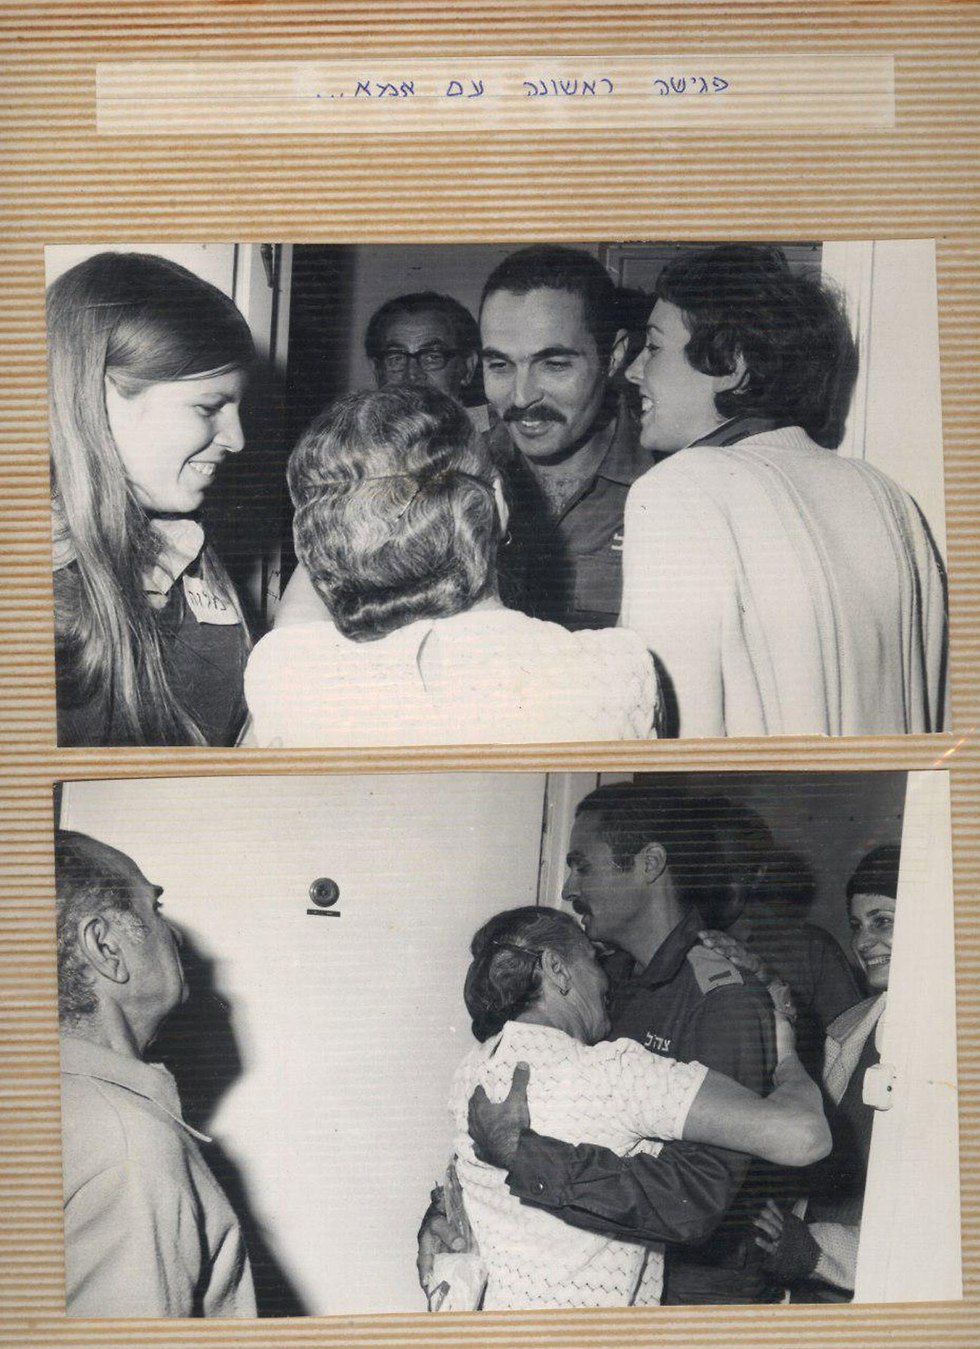 מיכאל זייפה נפגש לראשונה עם הוריו (צילום: אלי תבור העולם הזה)